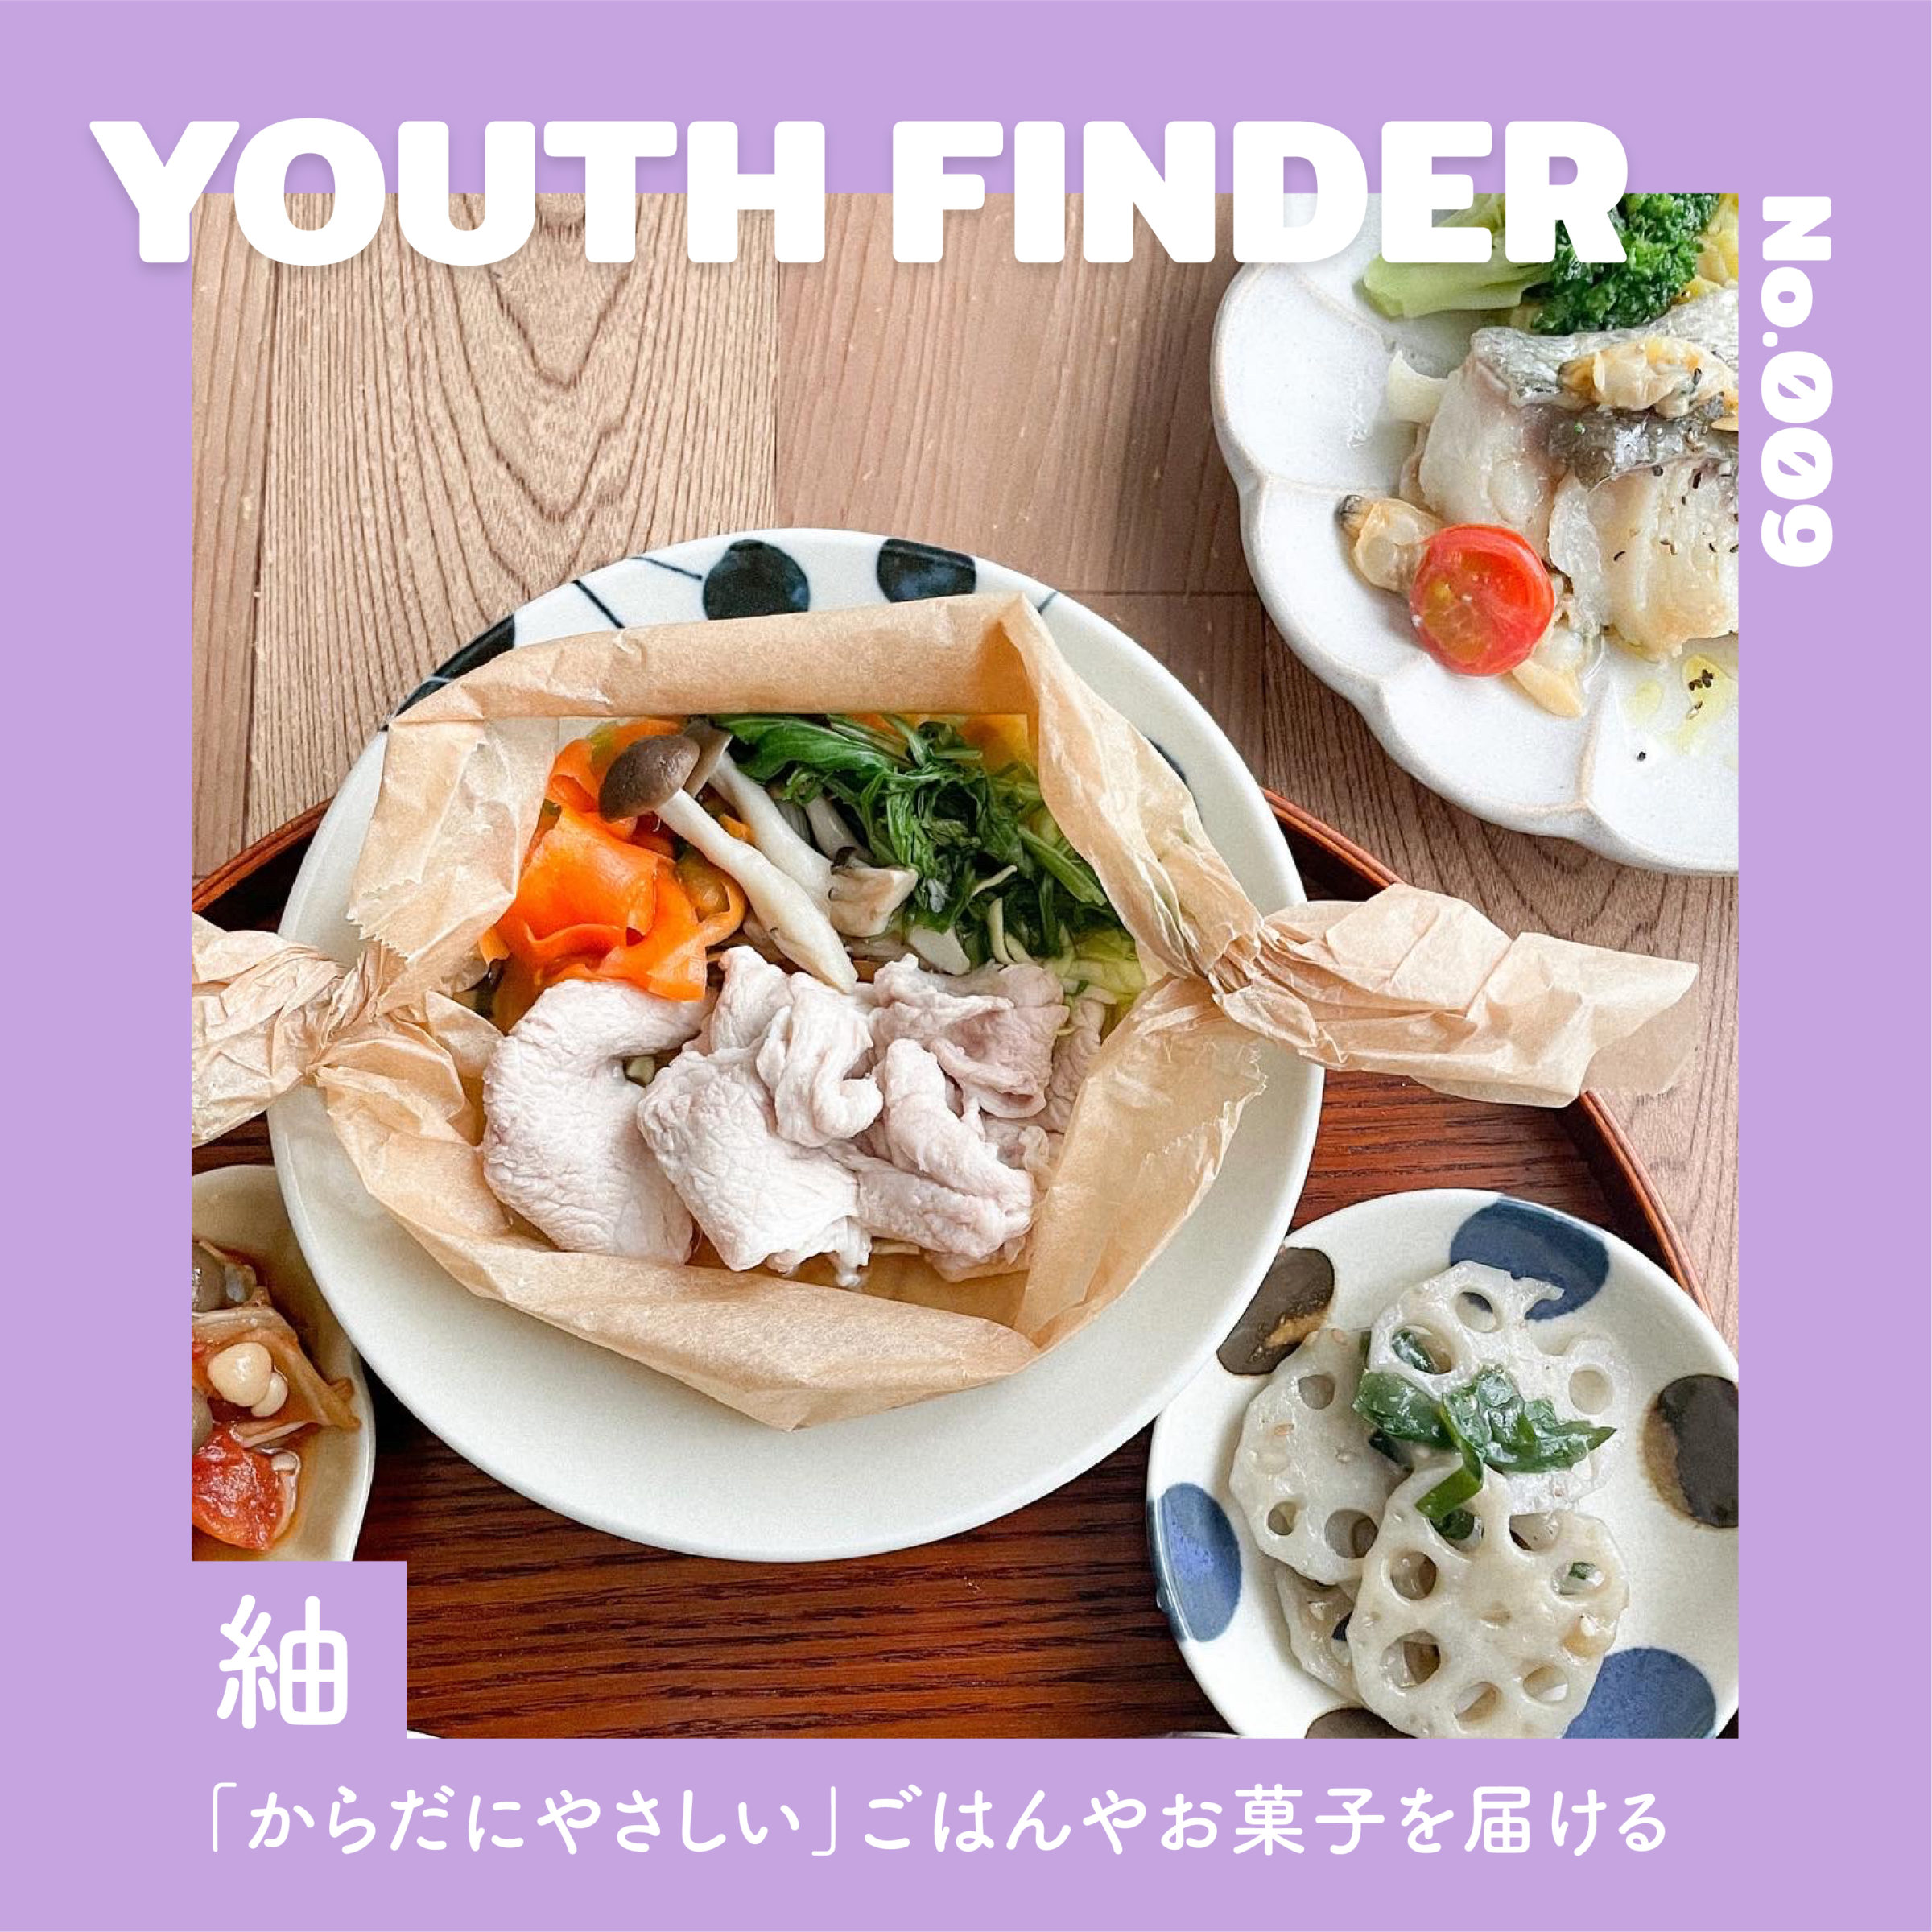 「からだにやさしい」をコンセプトにごはんやお菓子を提供している 紬さん【Youth Finder】のサムネイル